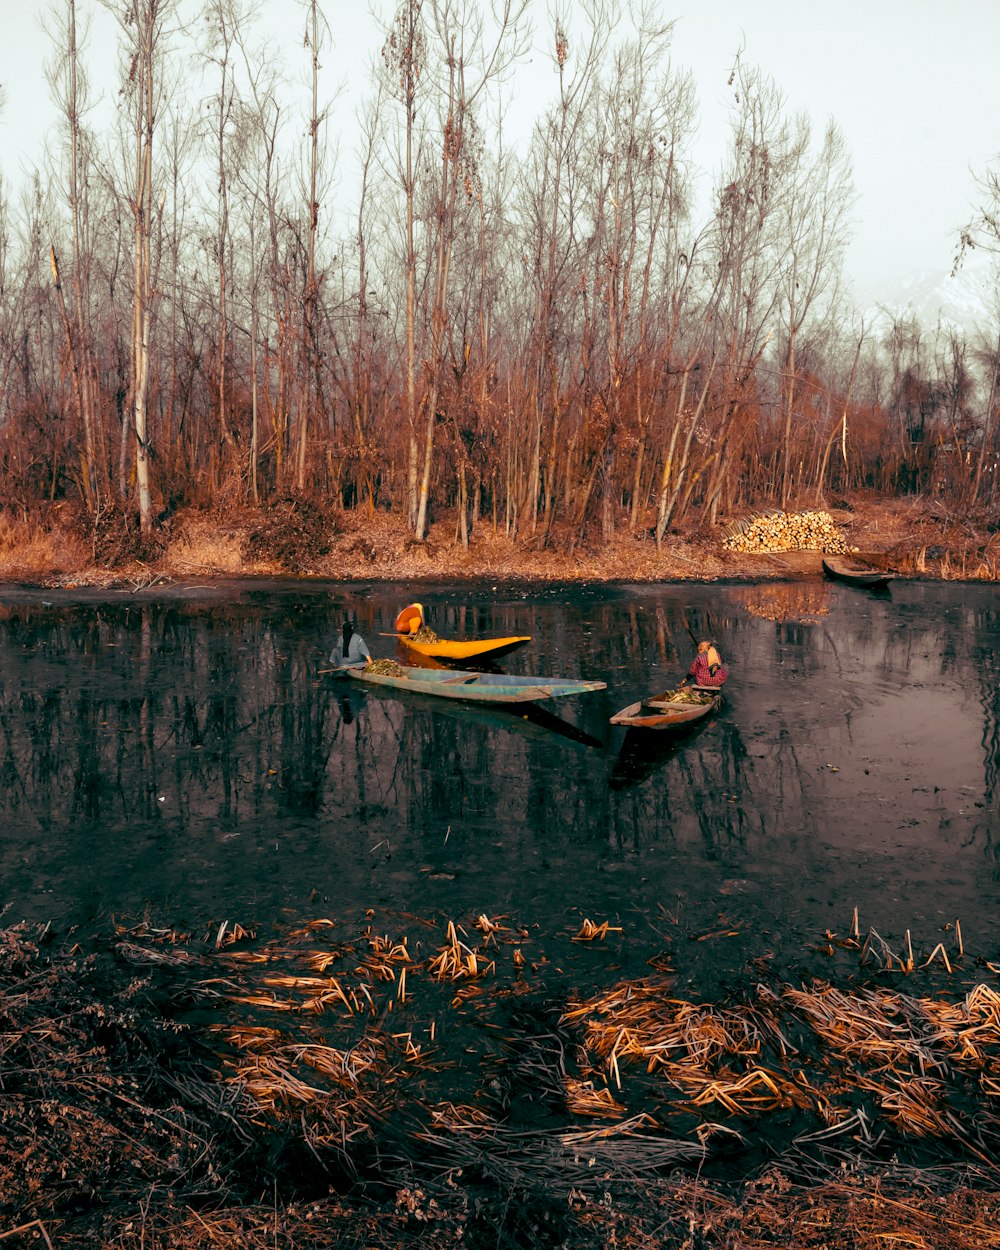 man in yellow kayak on river during daytime